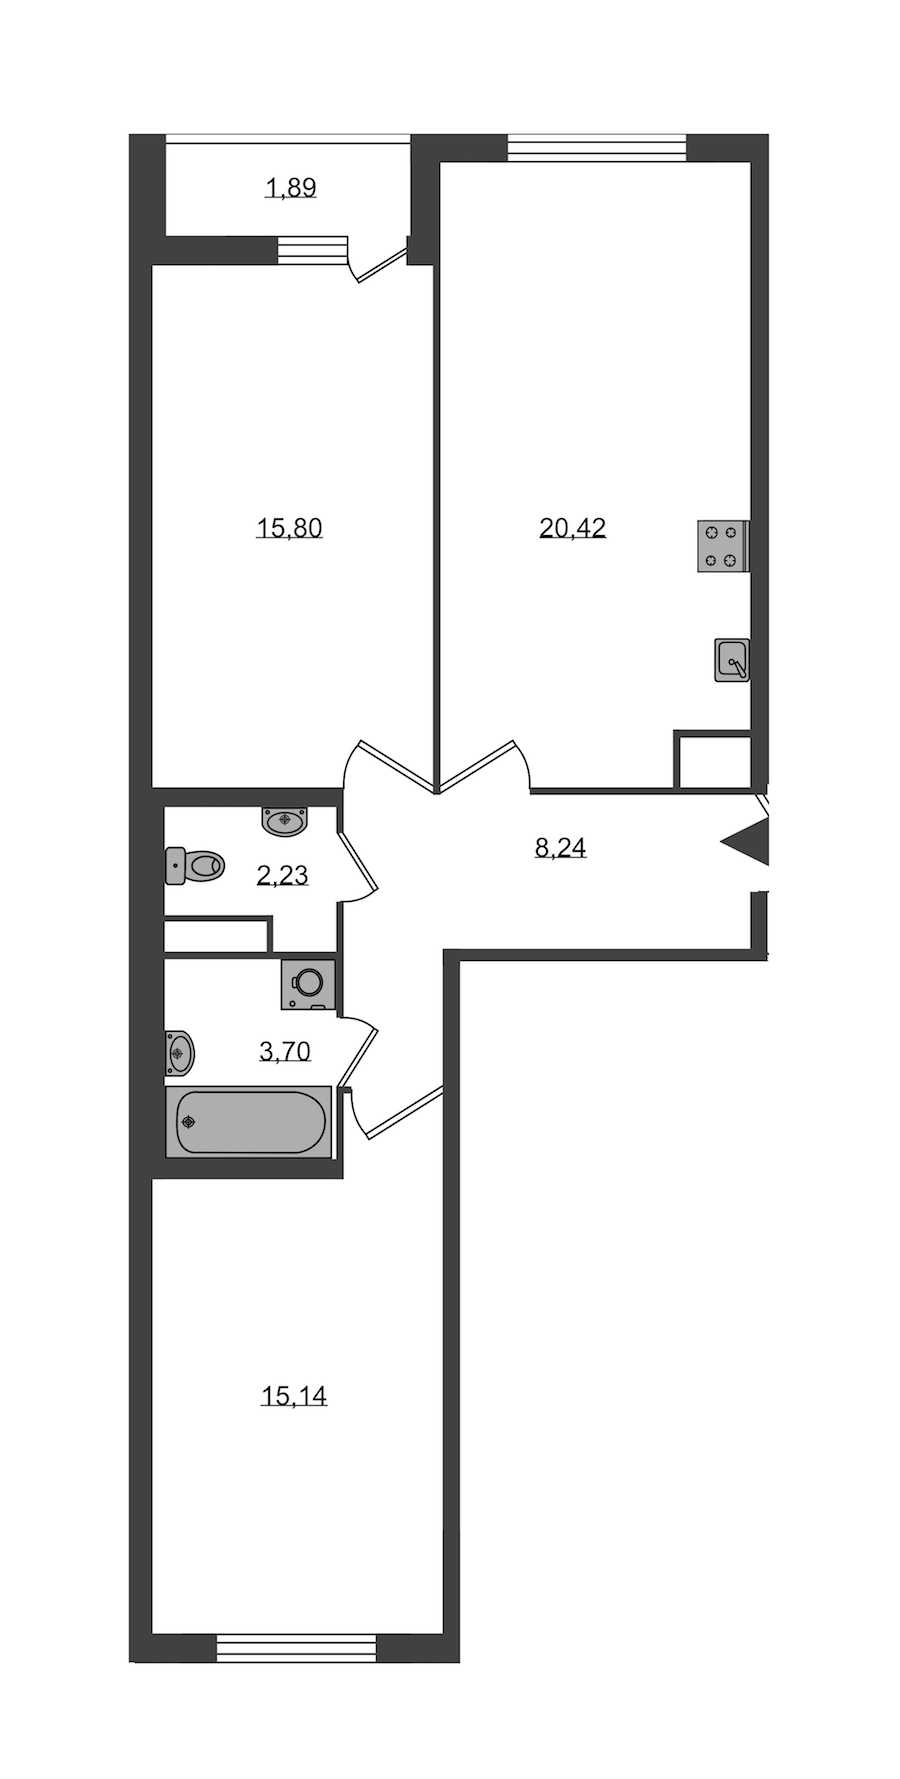 Двухкомнатная квартира в : площадь 65.53 м2 , этаж: 1 – купить в Санкт-Петербурге